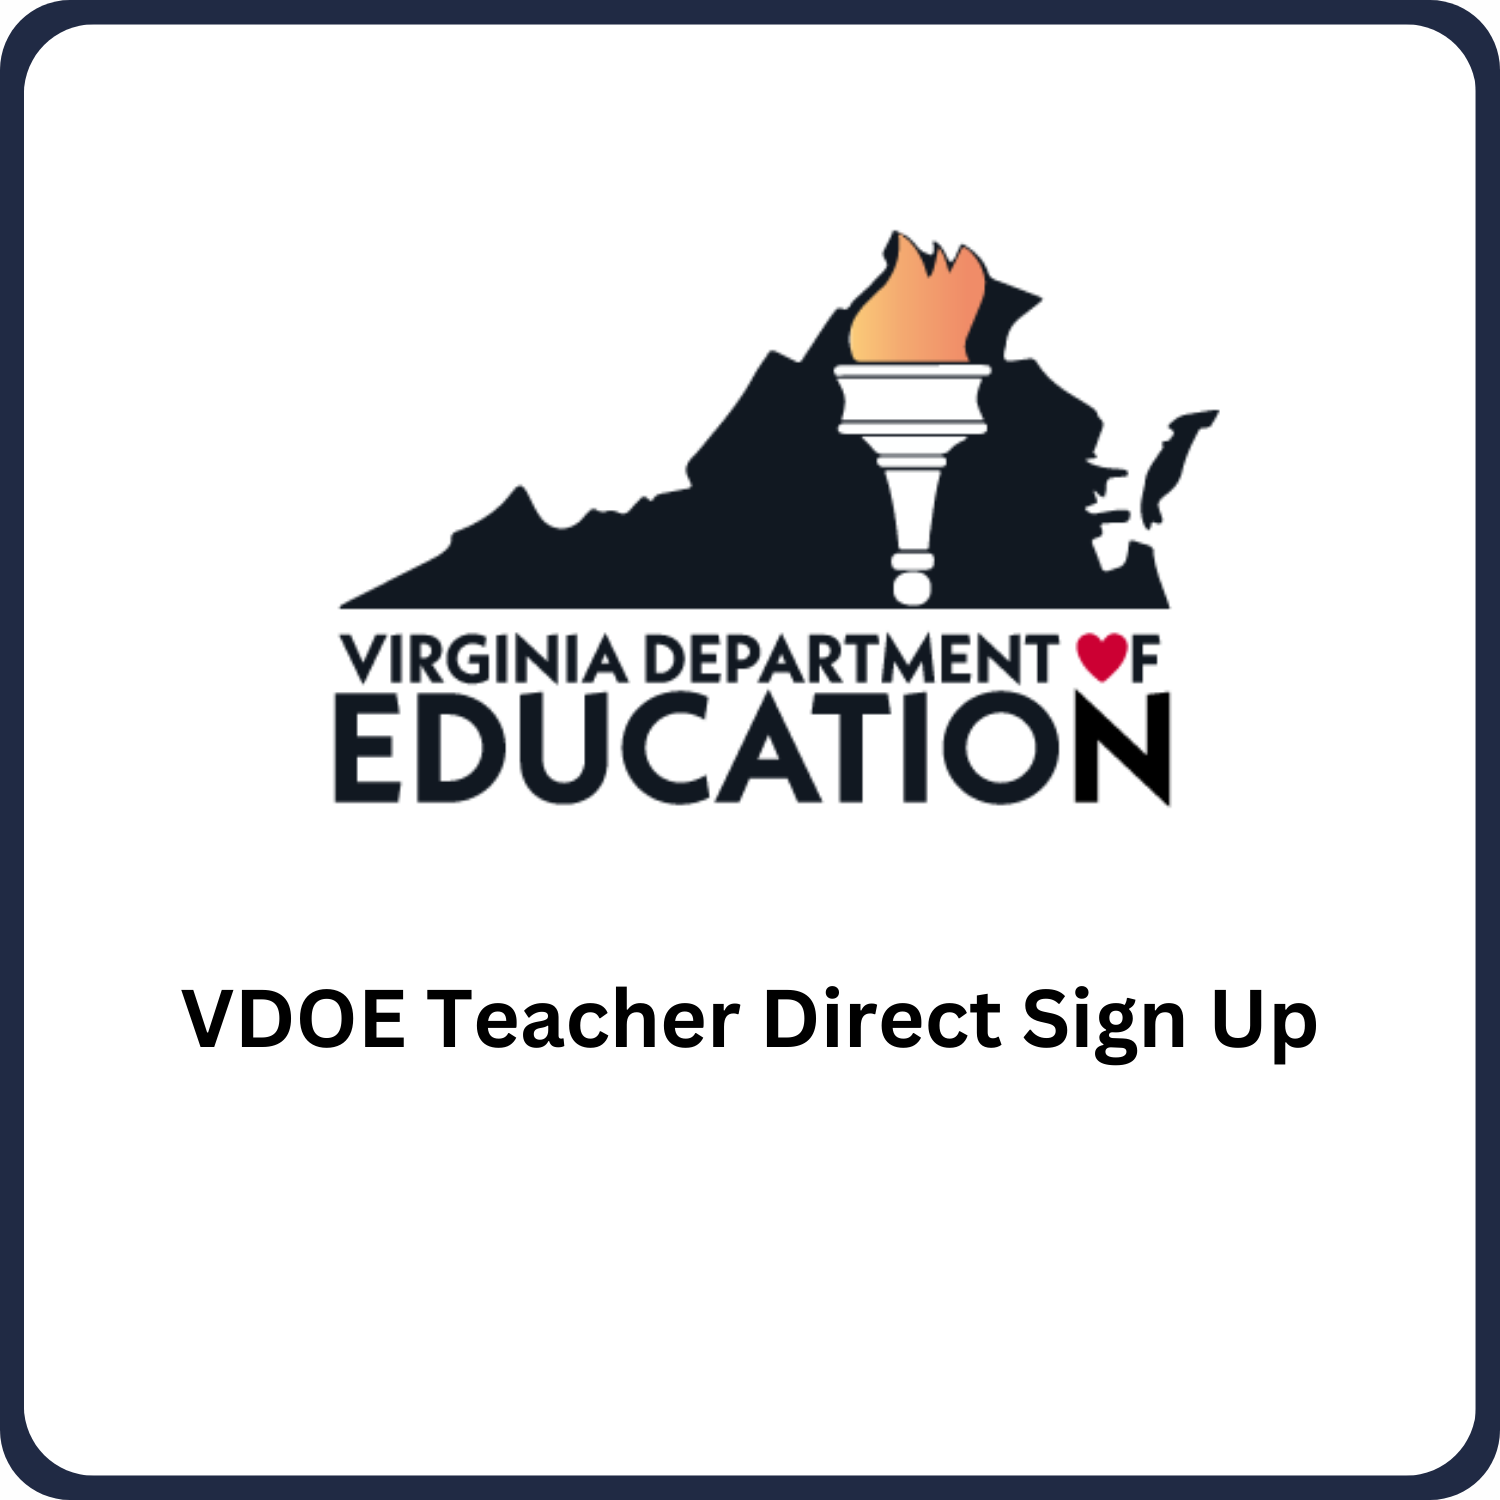 VDOE Teacher Direct Sign Up